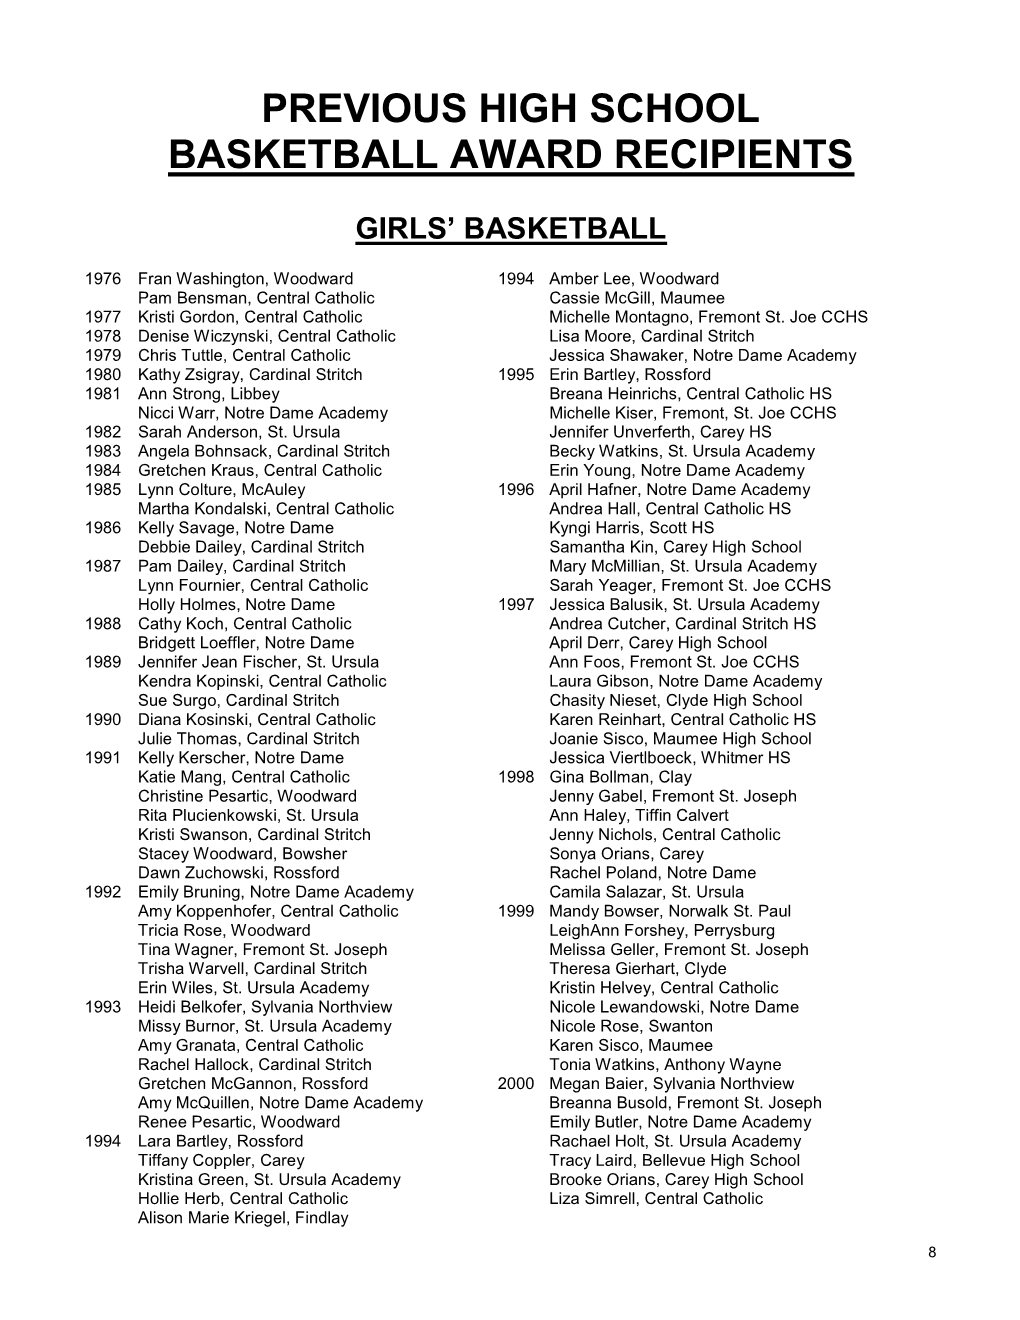 Previous High School Basketball Award Recipients